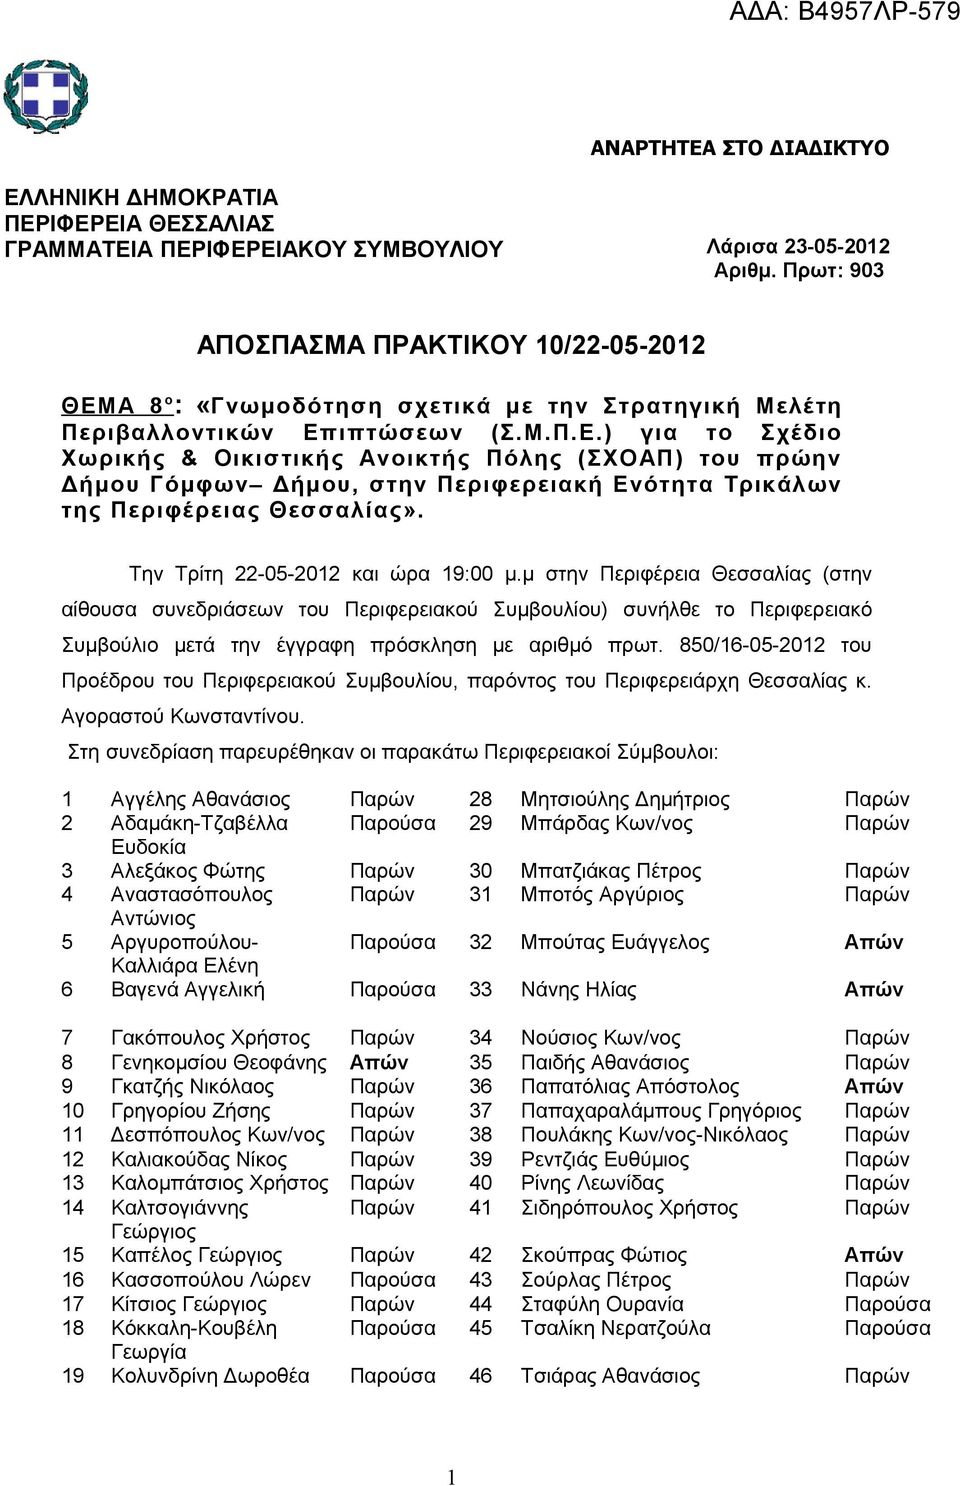 Την Τρίτη 22-05-2012 και ώρα 19:00 μ.μ στην Περιφέρεια Θεσσαλίας (στην αίθουσα συνεδριάσεων του Περιφερειακού Συμβουλίου) συνήλθε το Περιφερειακό Συμβούλιο μετά την έγγραφη πρόσκληση με αριθμό πρωτ.